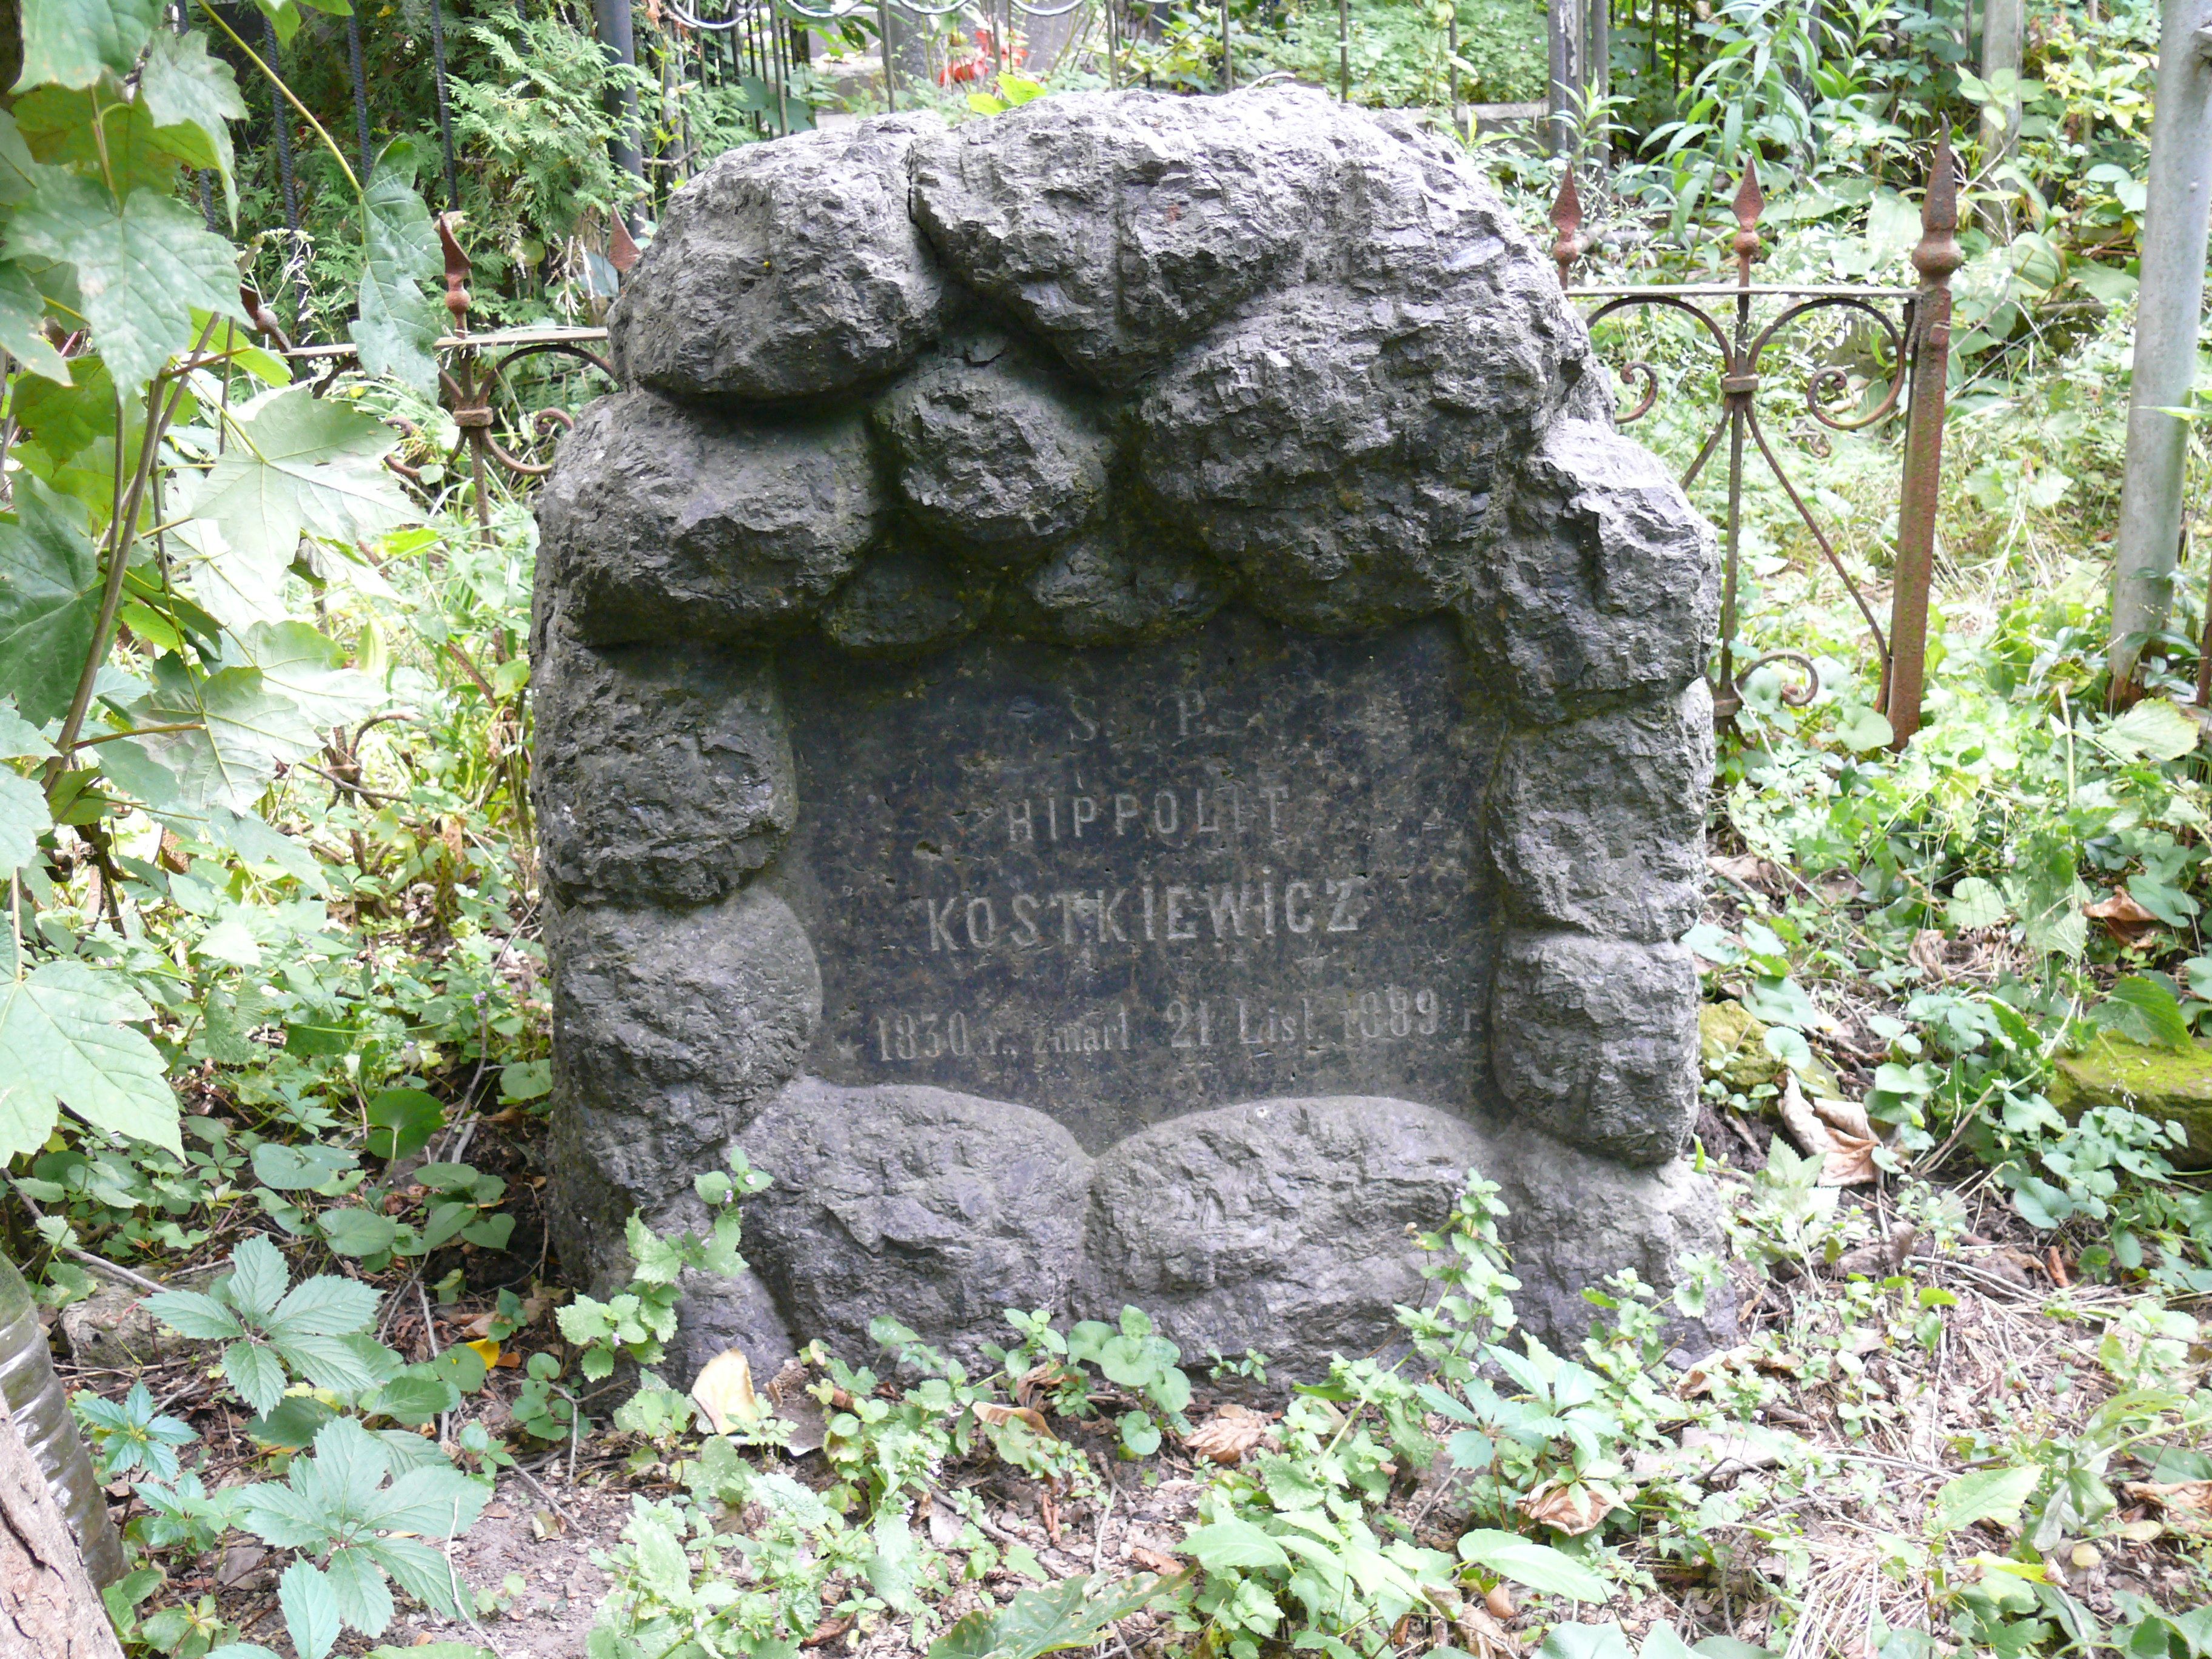 Tombstone of Hipolit Kostkiewicz